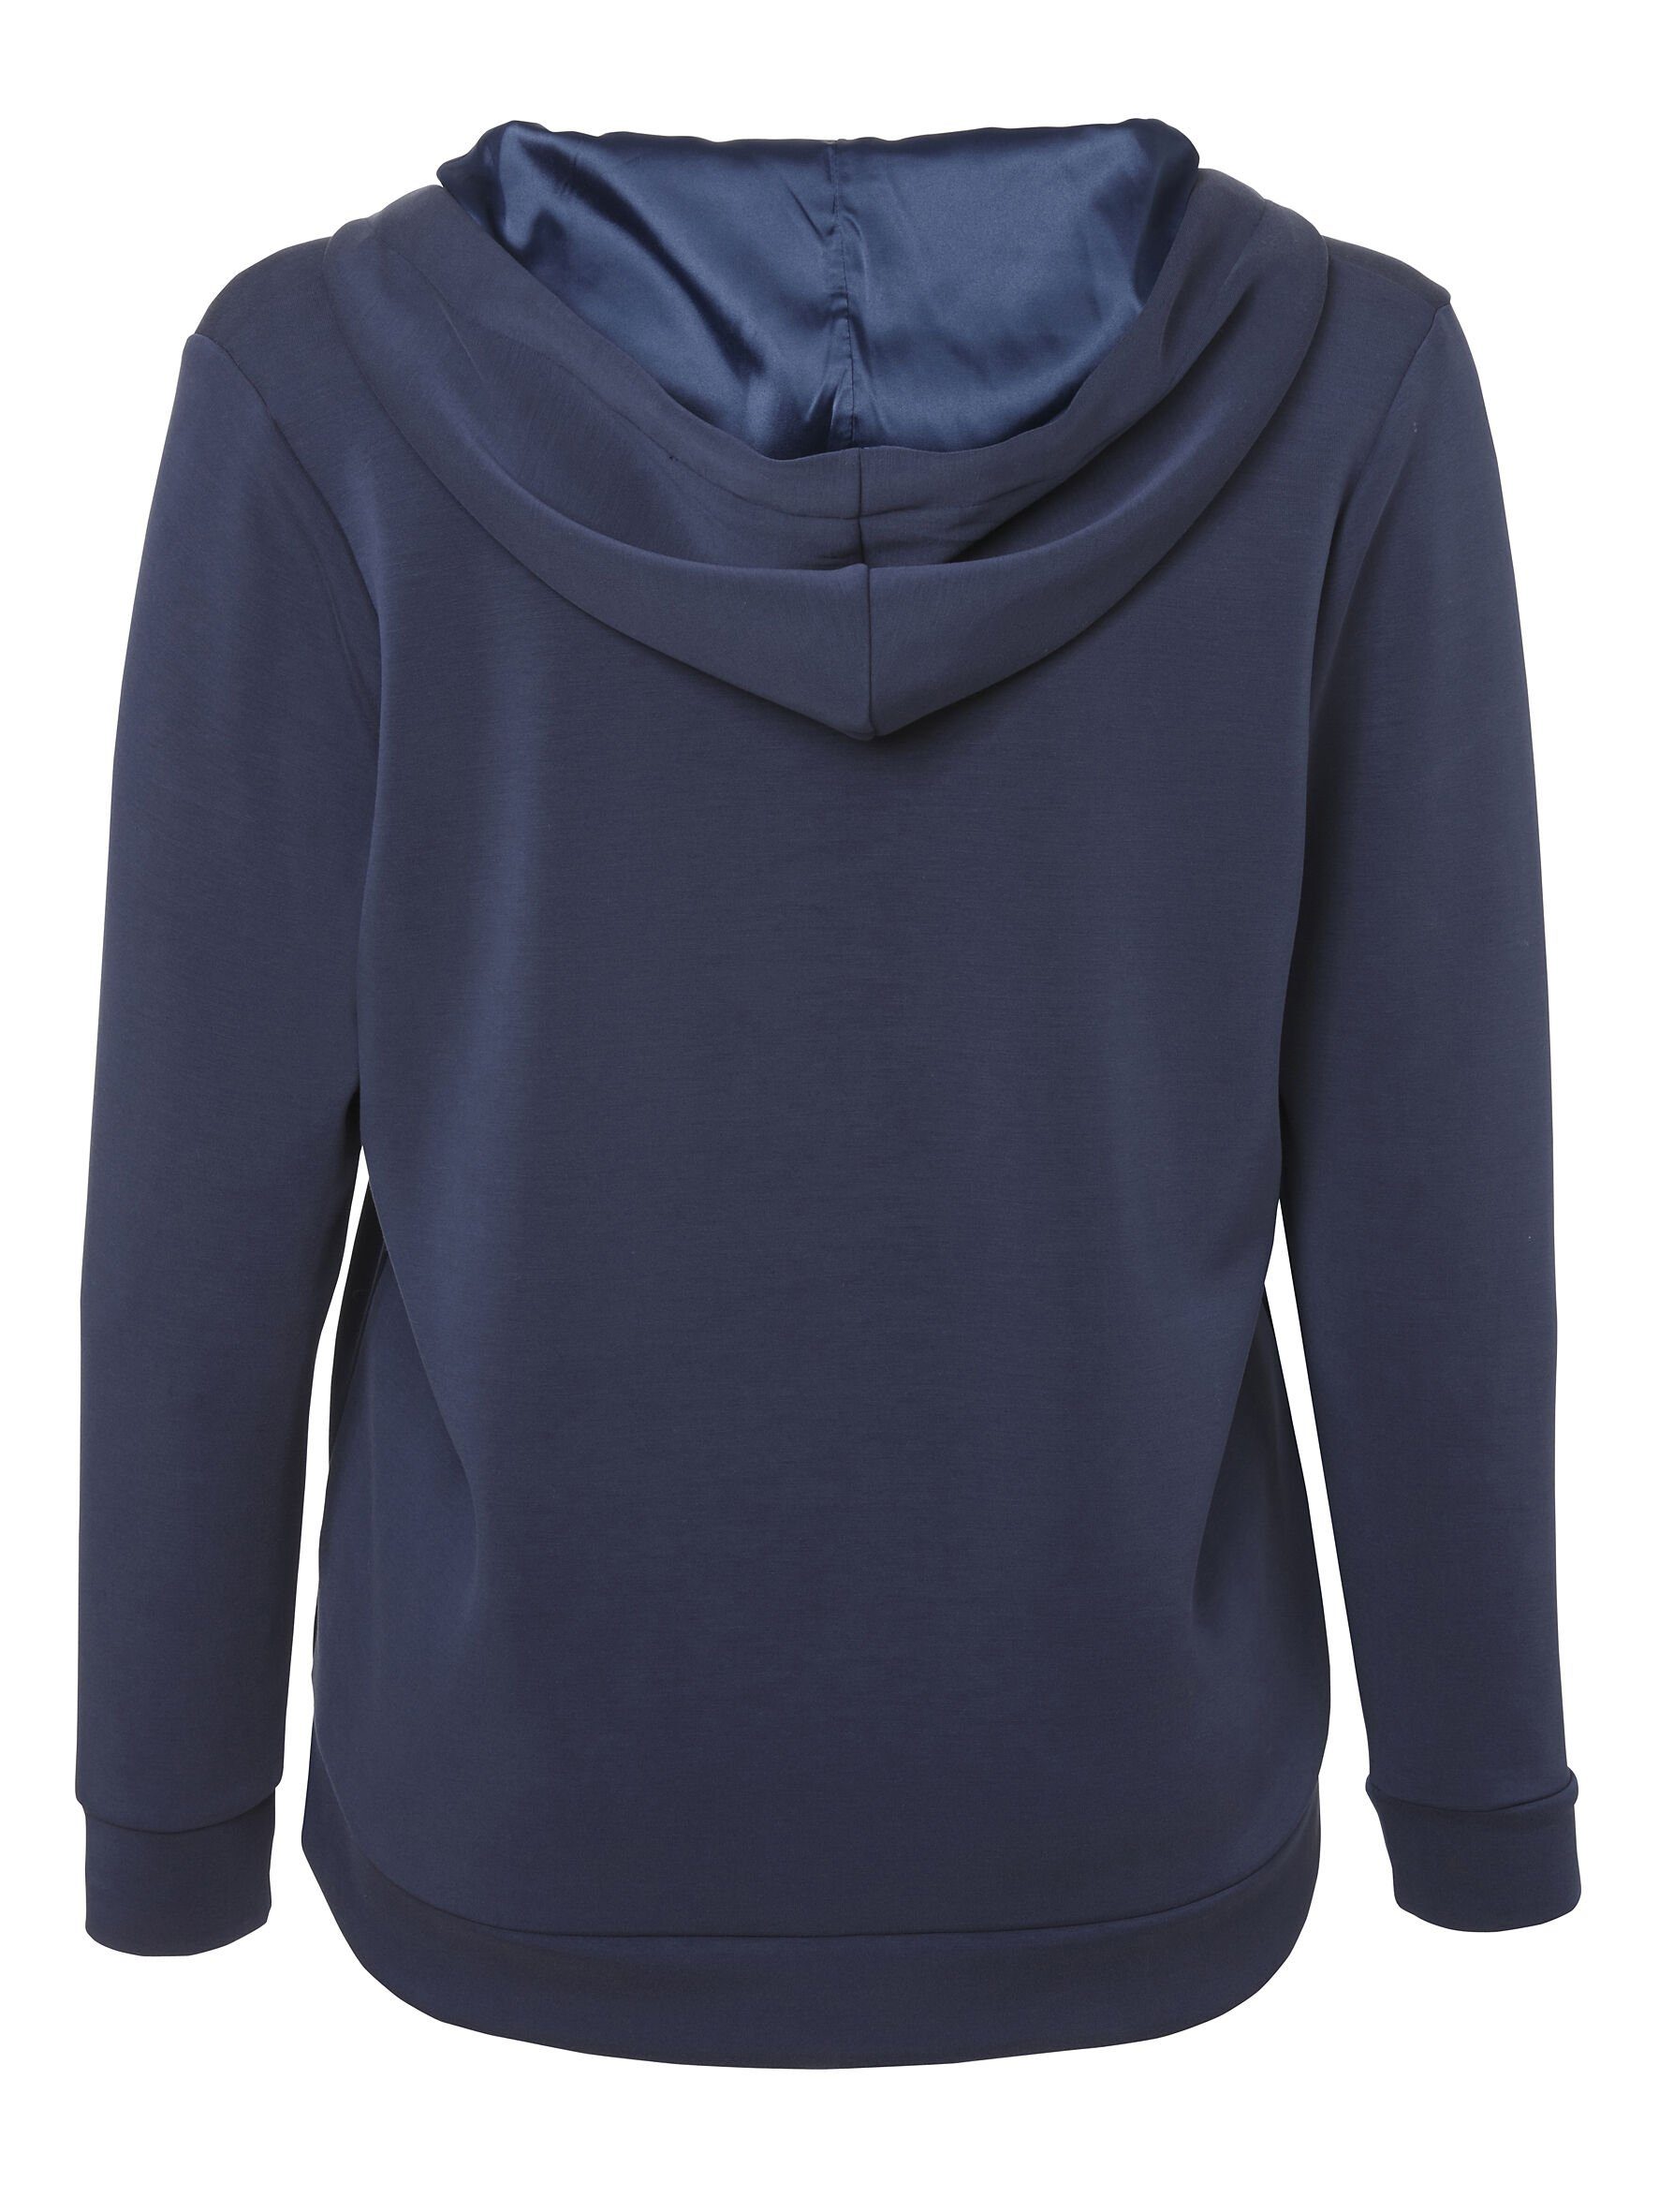 indigo DUE Sportives Sweatshirt hochwertigen unifarbenem Viskosemischung Sweatshirt APPIA VIA in Stil mit